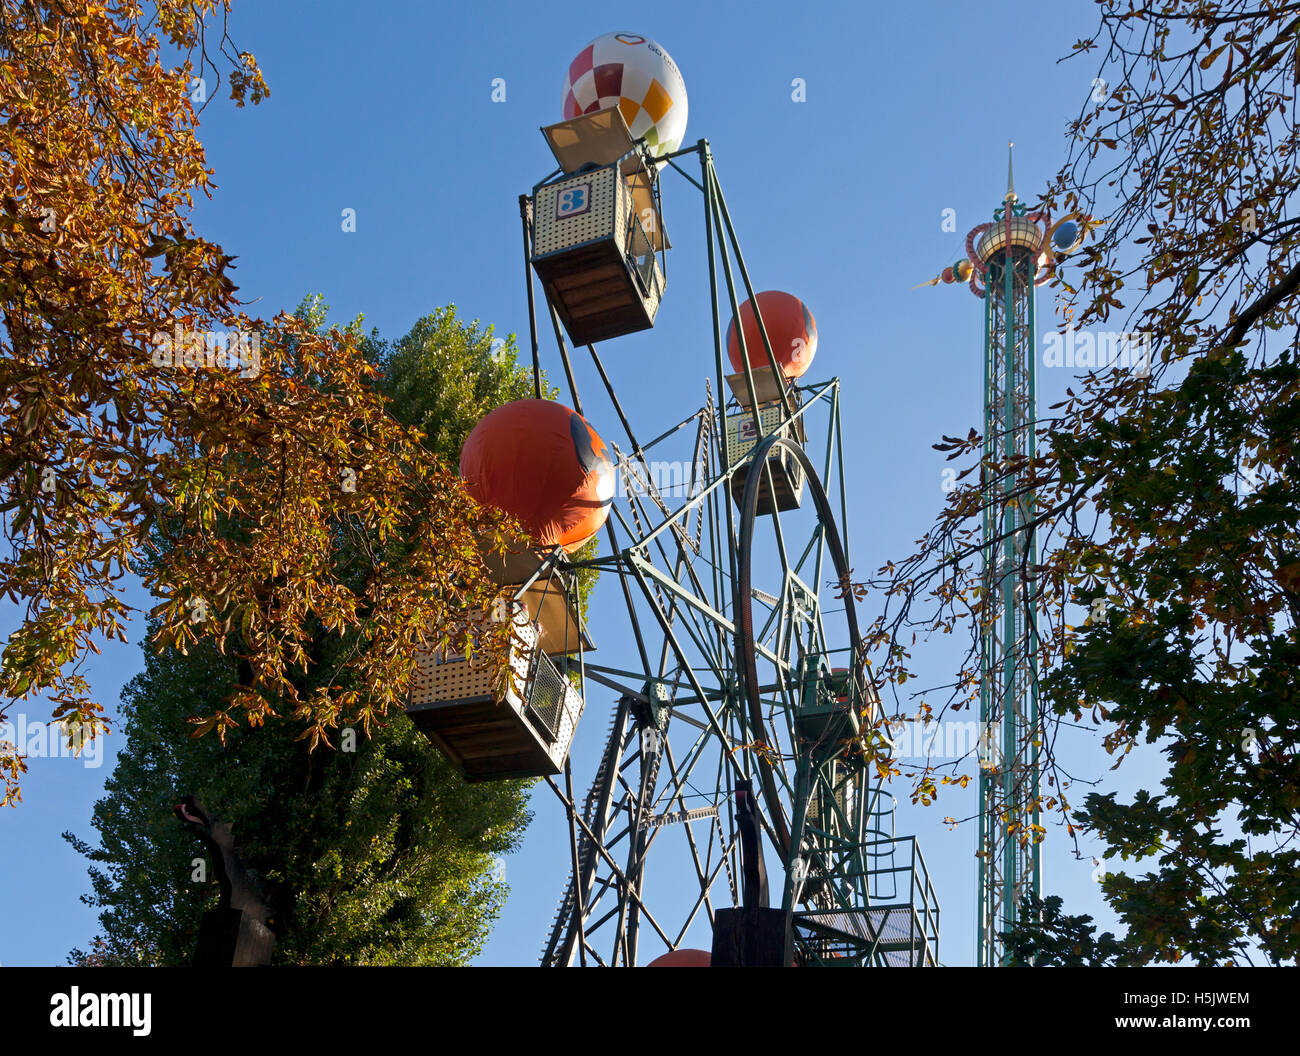 Thème de l'Halloween dans les jardins de Tivoli, Copenhague, Danemark. La grande roue ballon sur une journée ensoleillée à la fin d'octobre. Banque D'Images